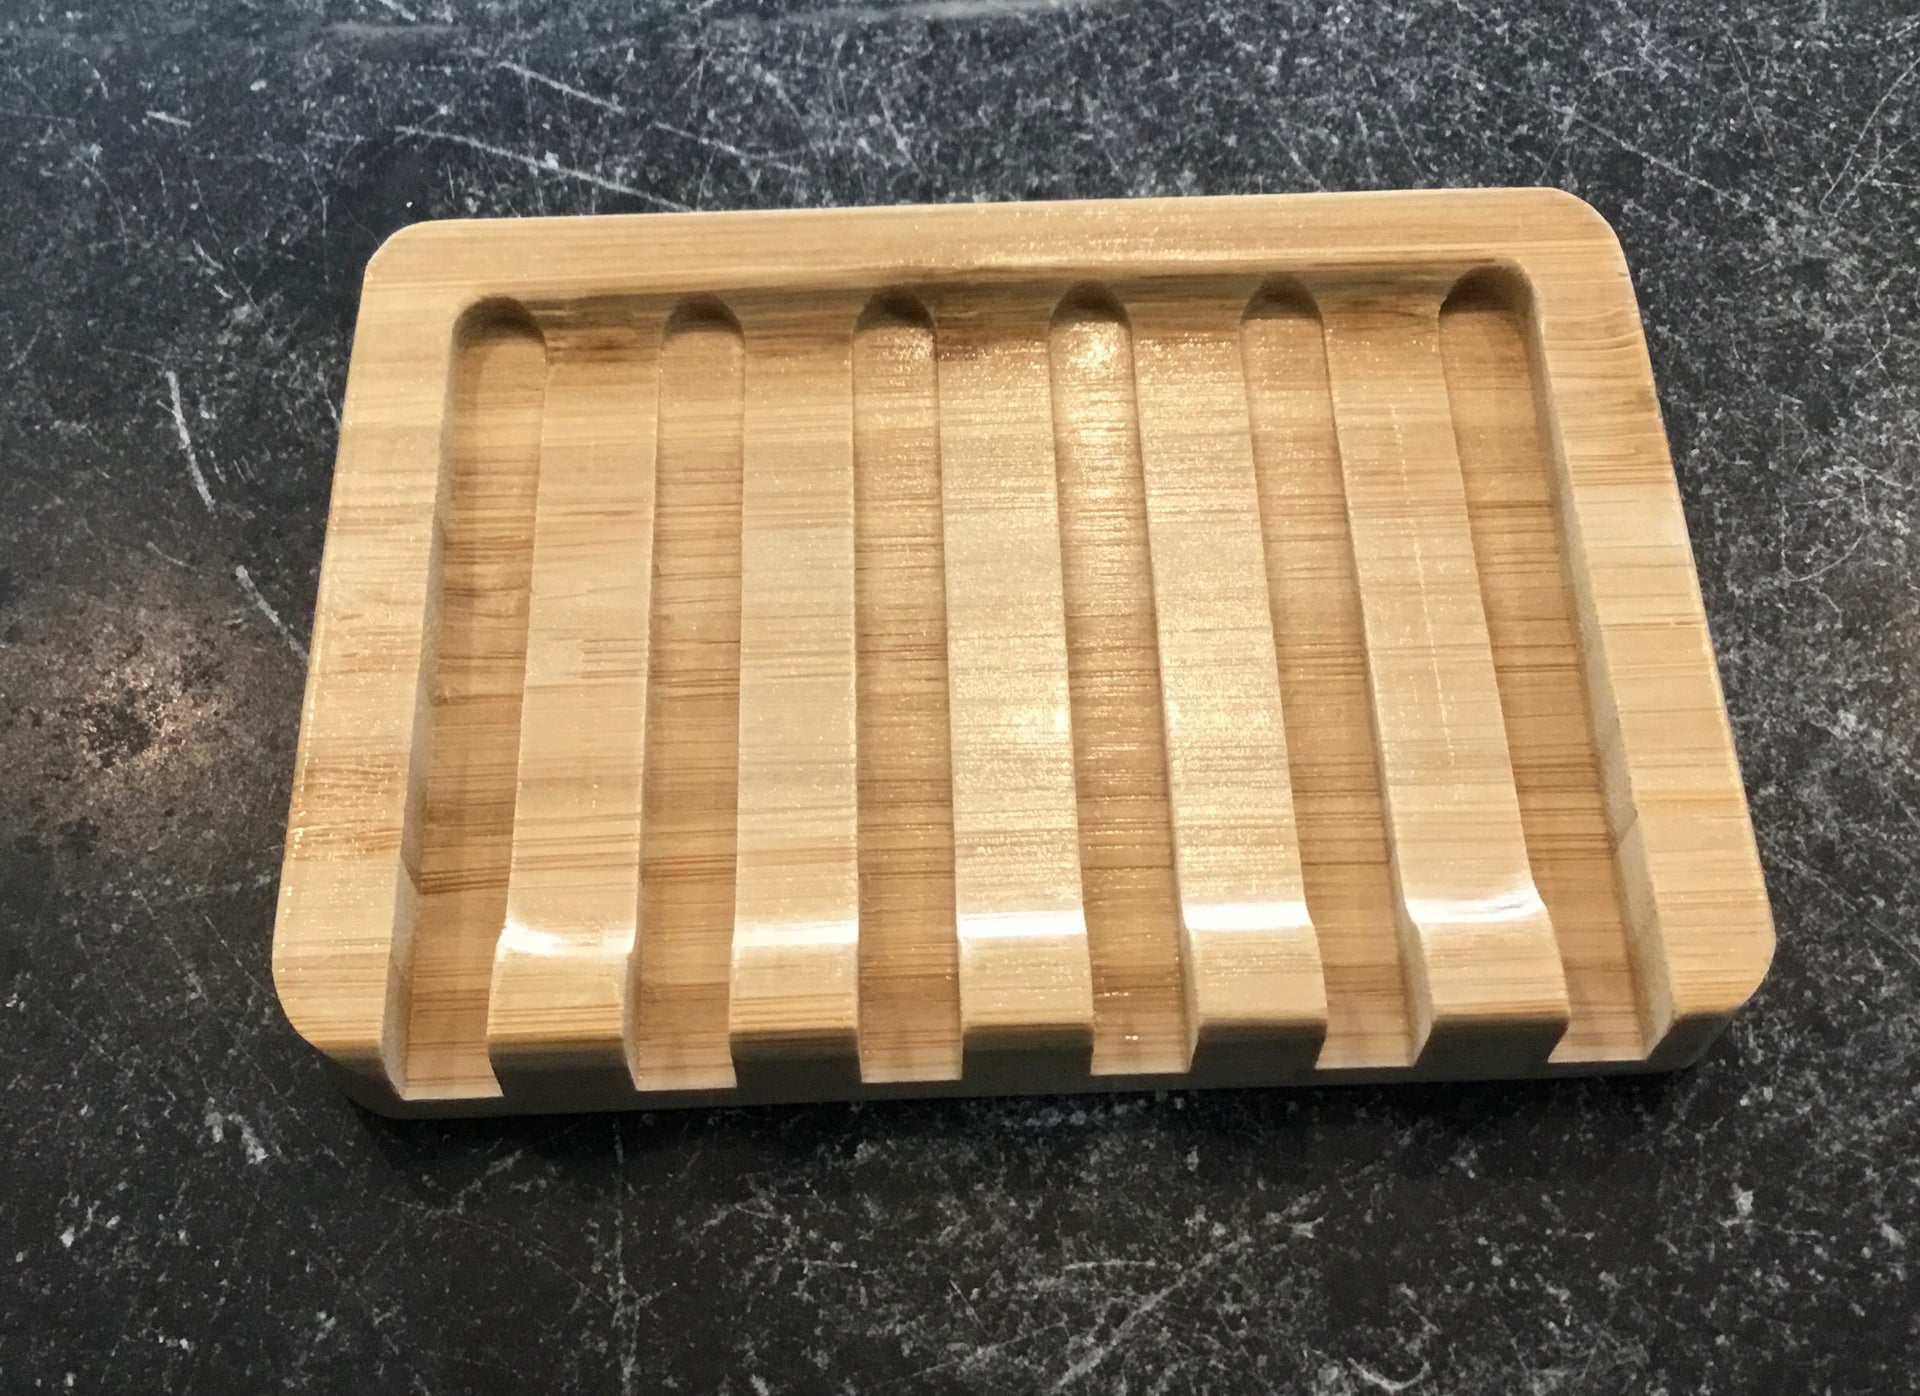 Wood Soap Dish